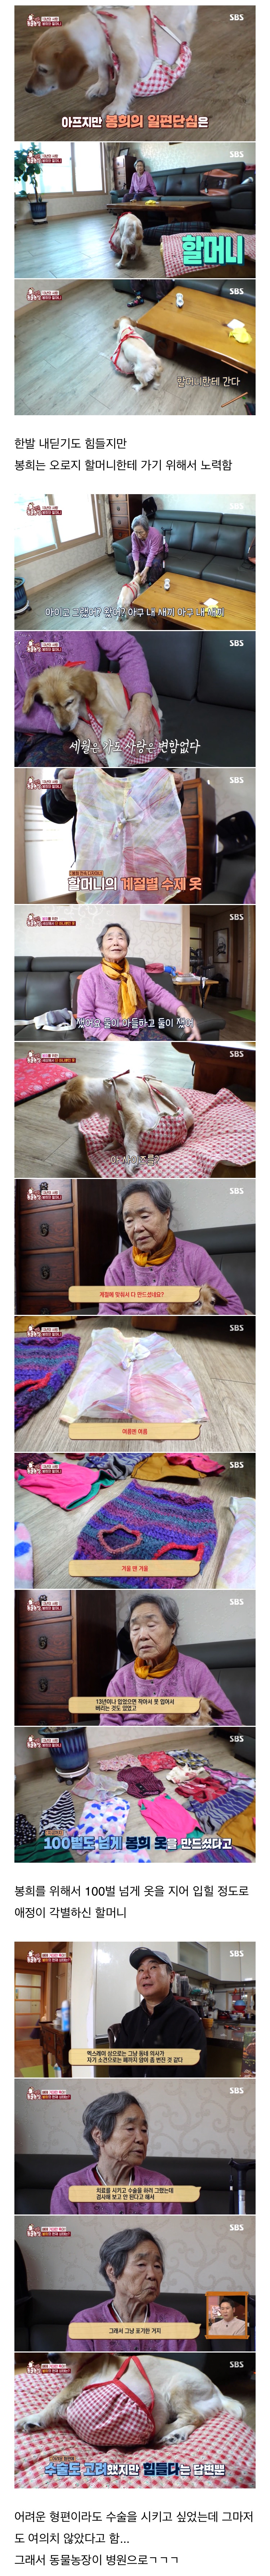 결국 80대 할머님을 울게 만든 동물농장 제작진들..jpg